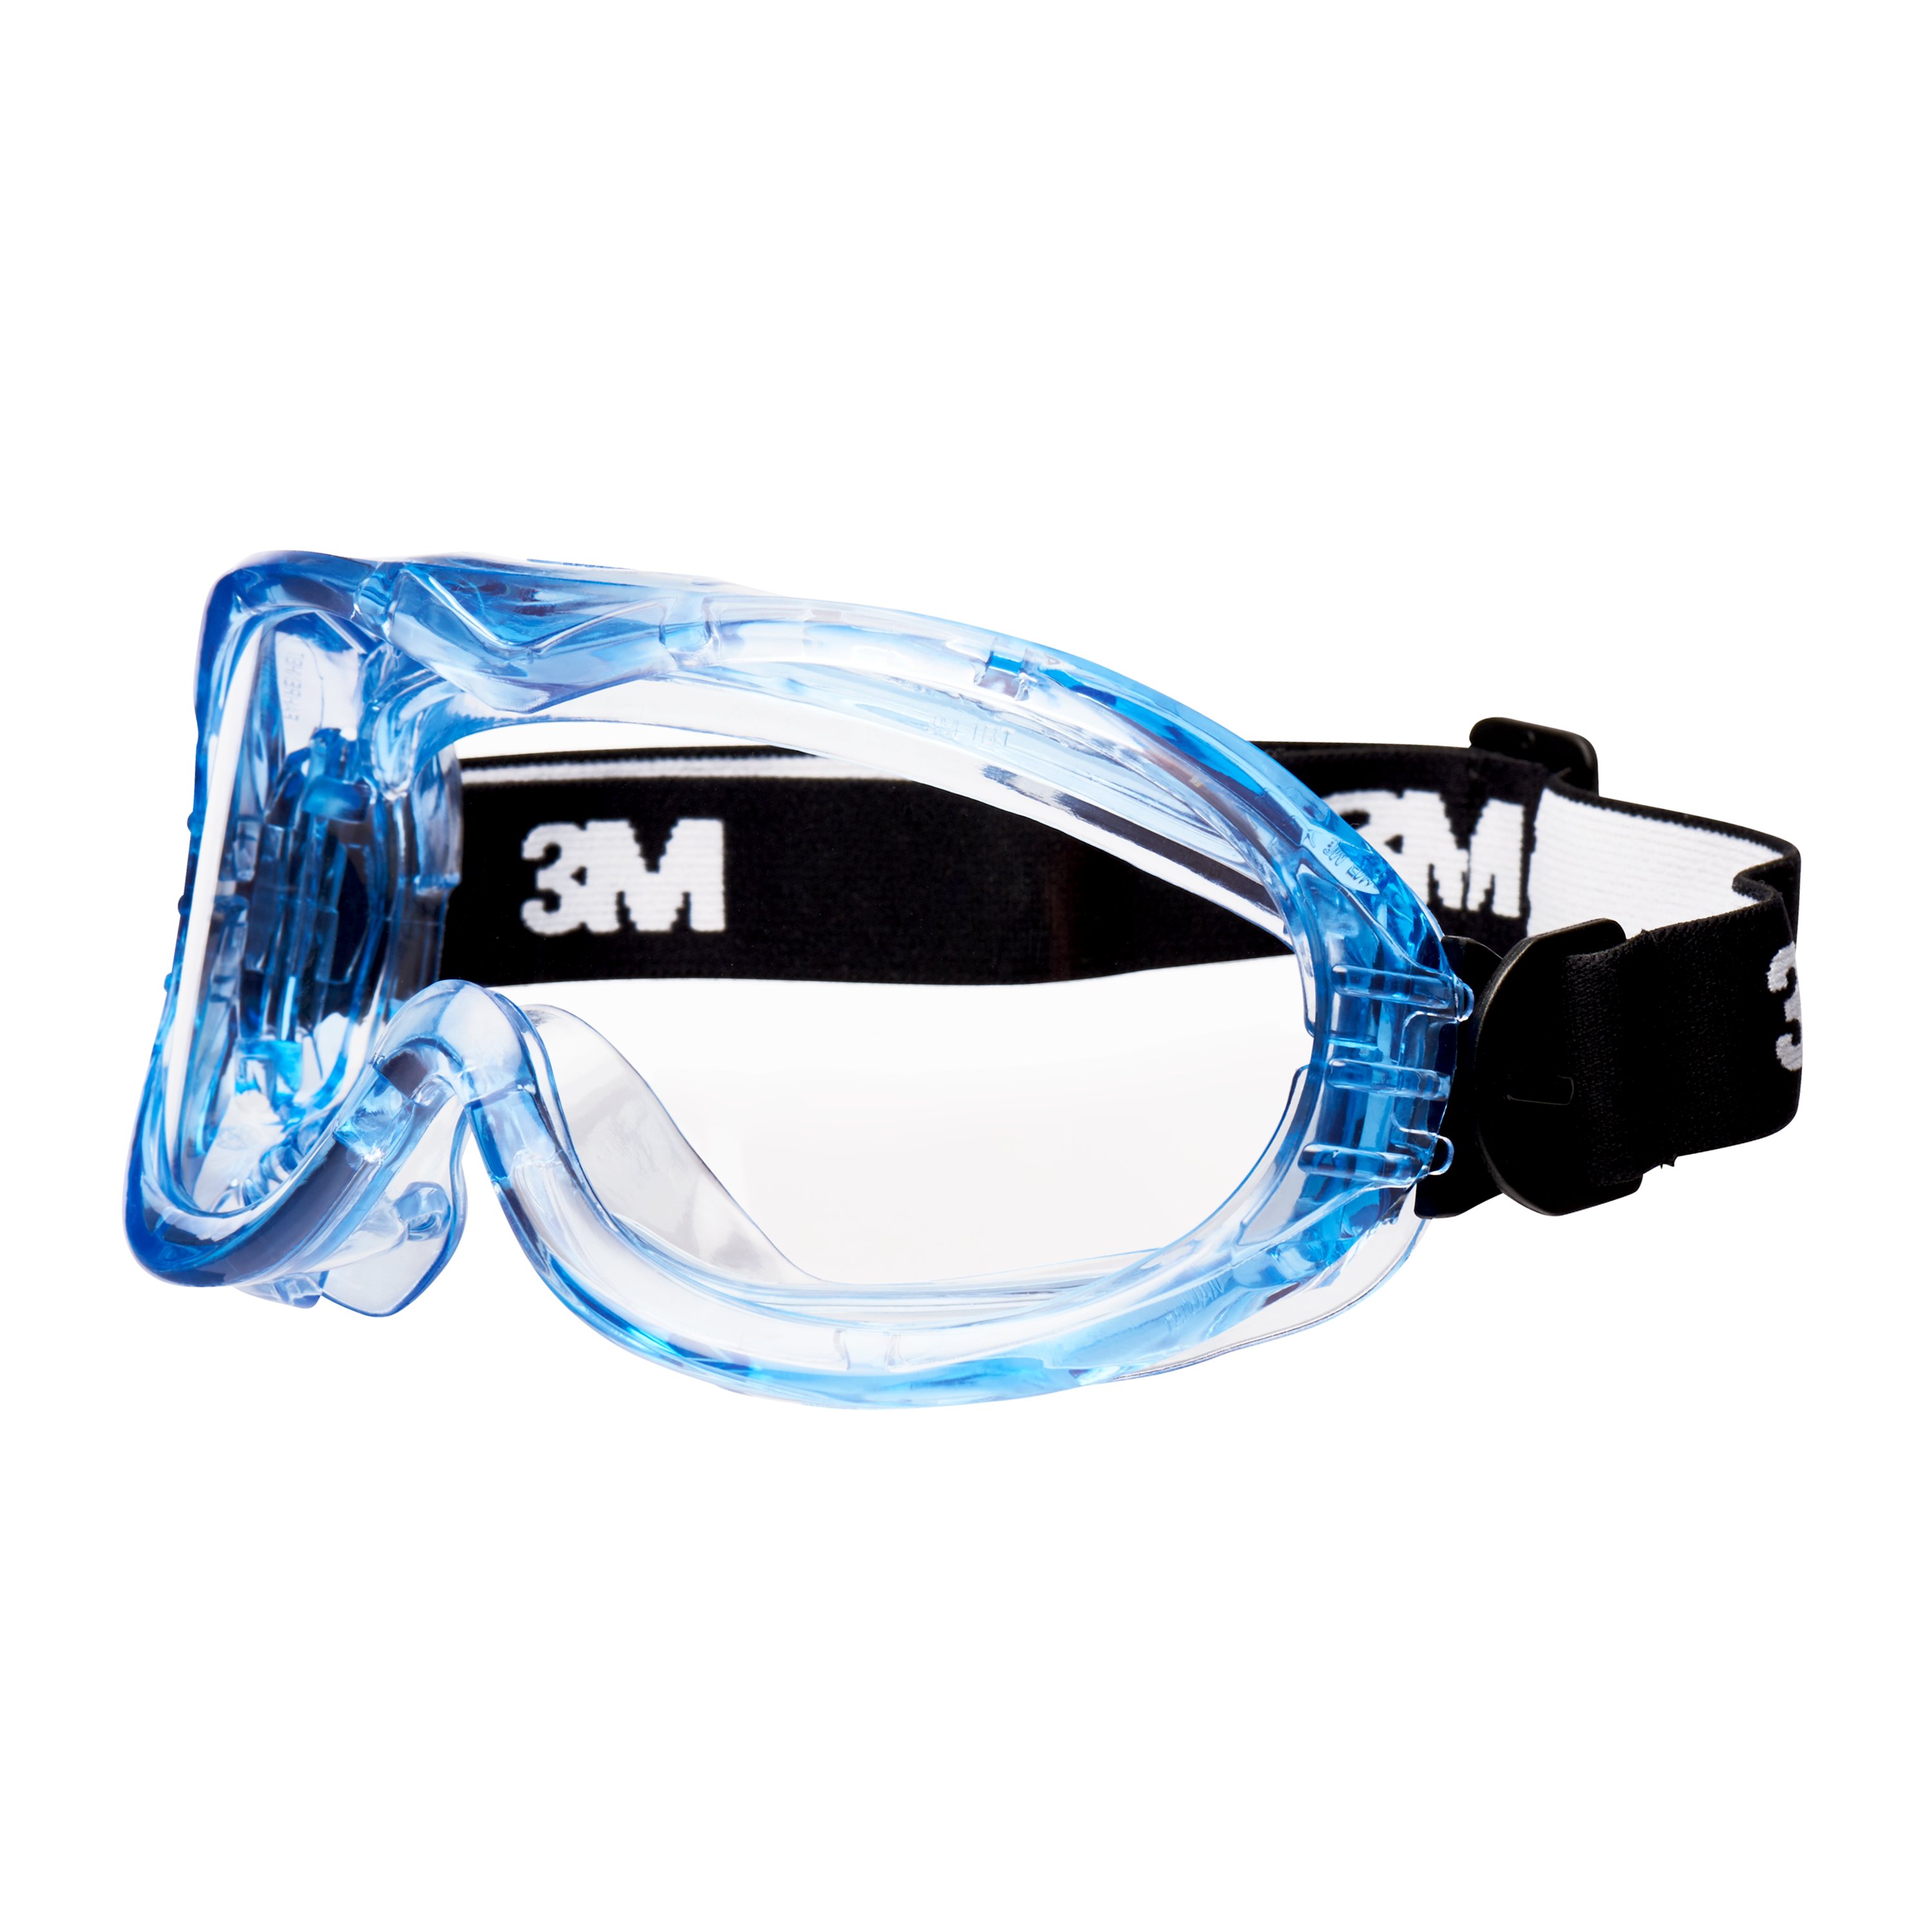 3M Vollsichtbrille blau/transparent